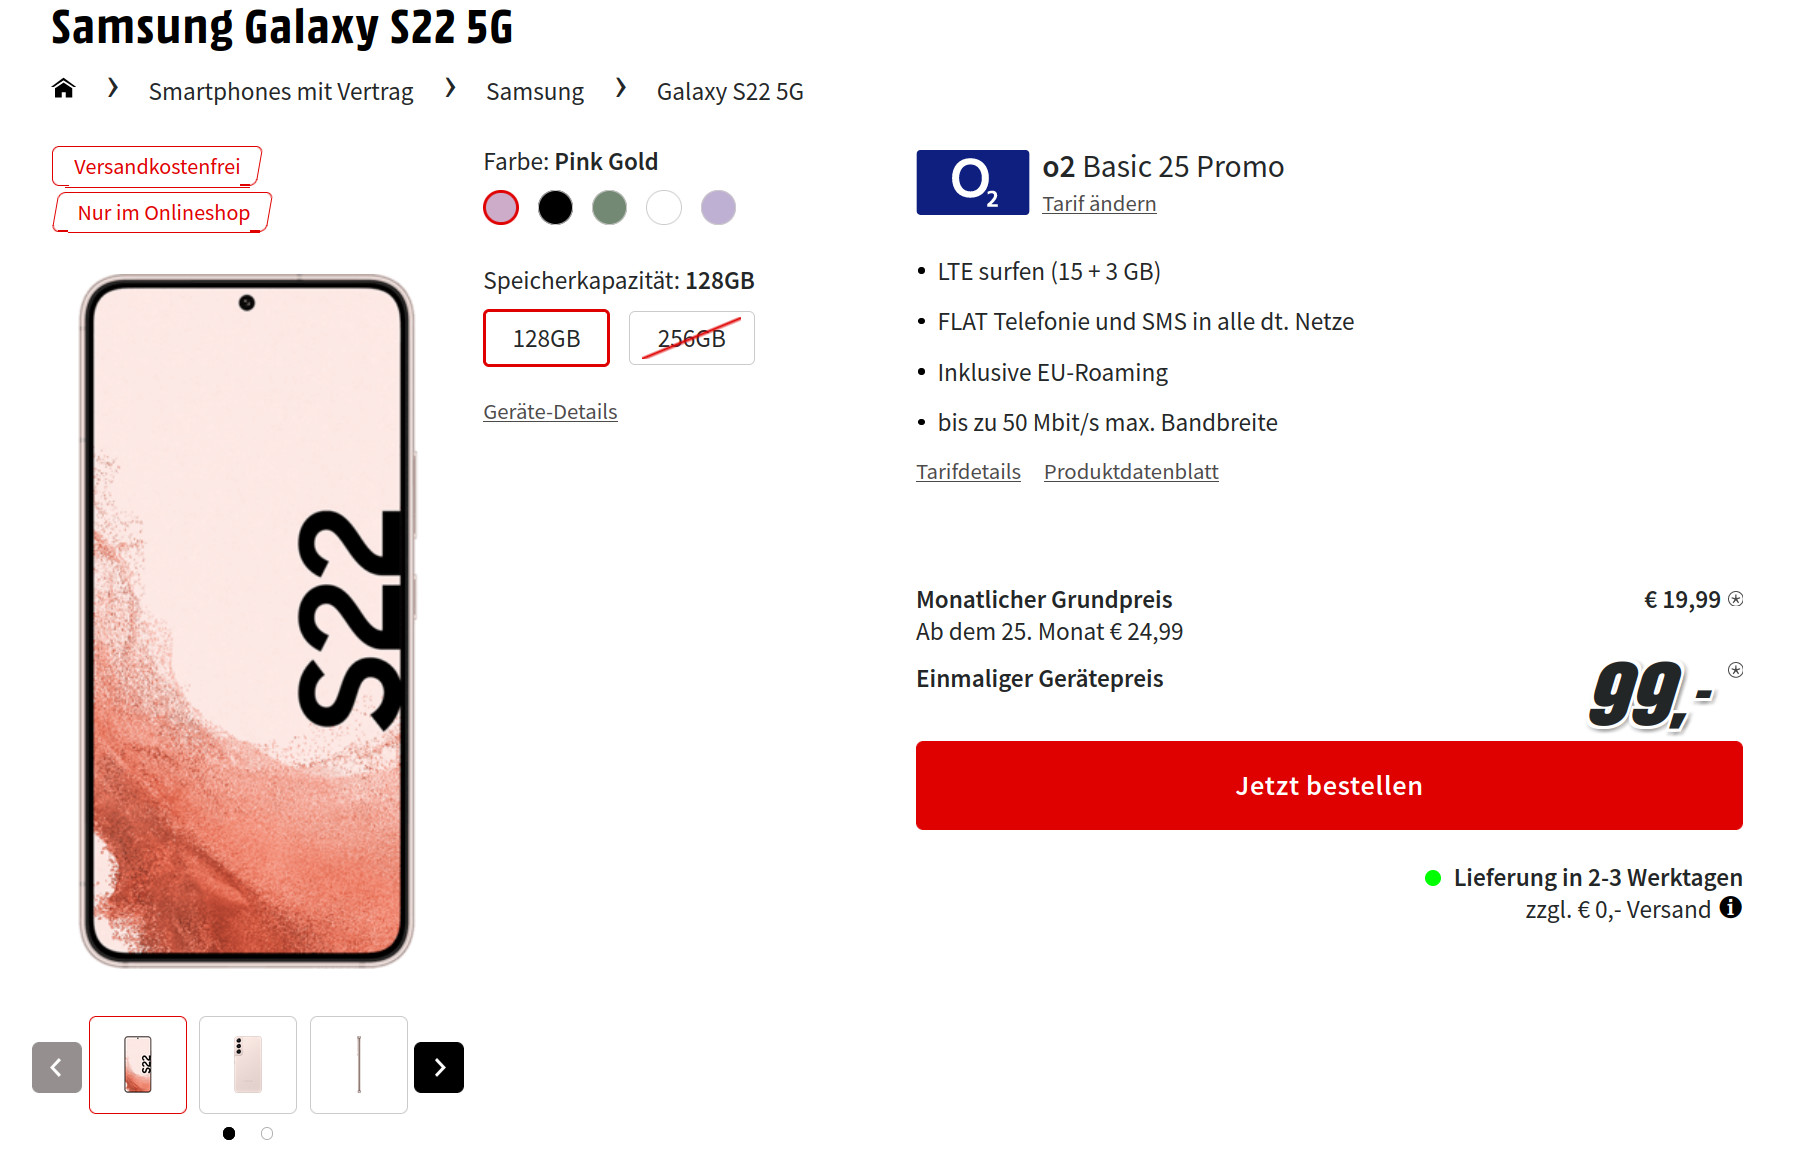 Galaxy S22 5G Tarife: 18 GB O2 Allnet-Flat für mtl. 19,99 Euro/Eff. 1,61 Euro